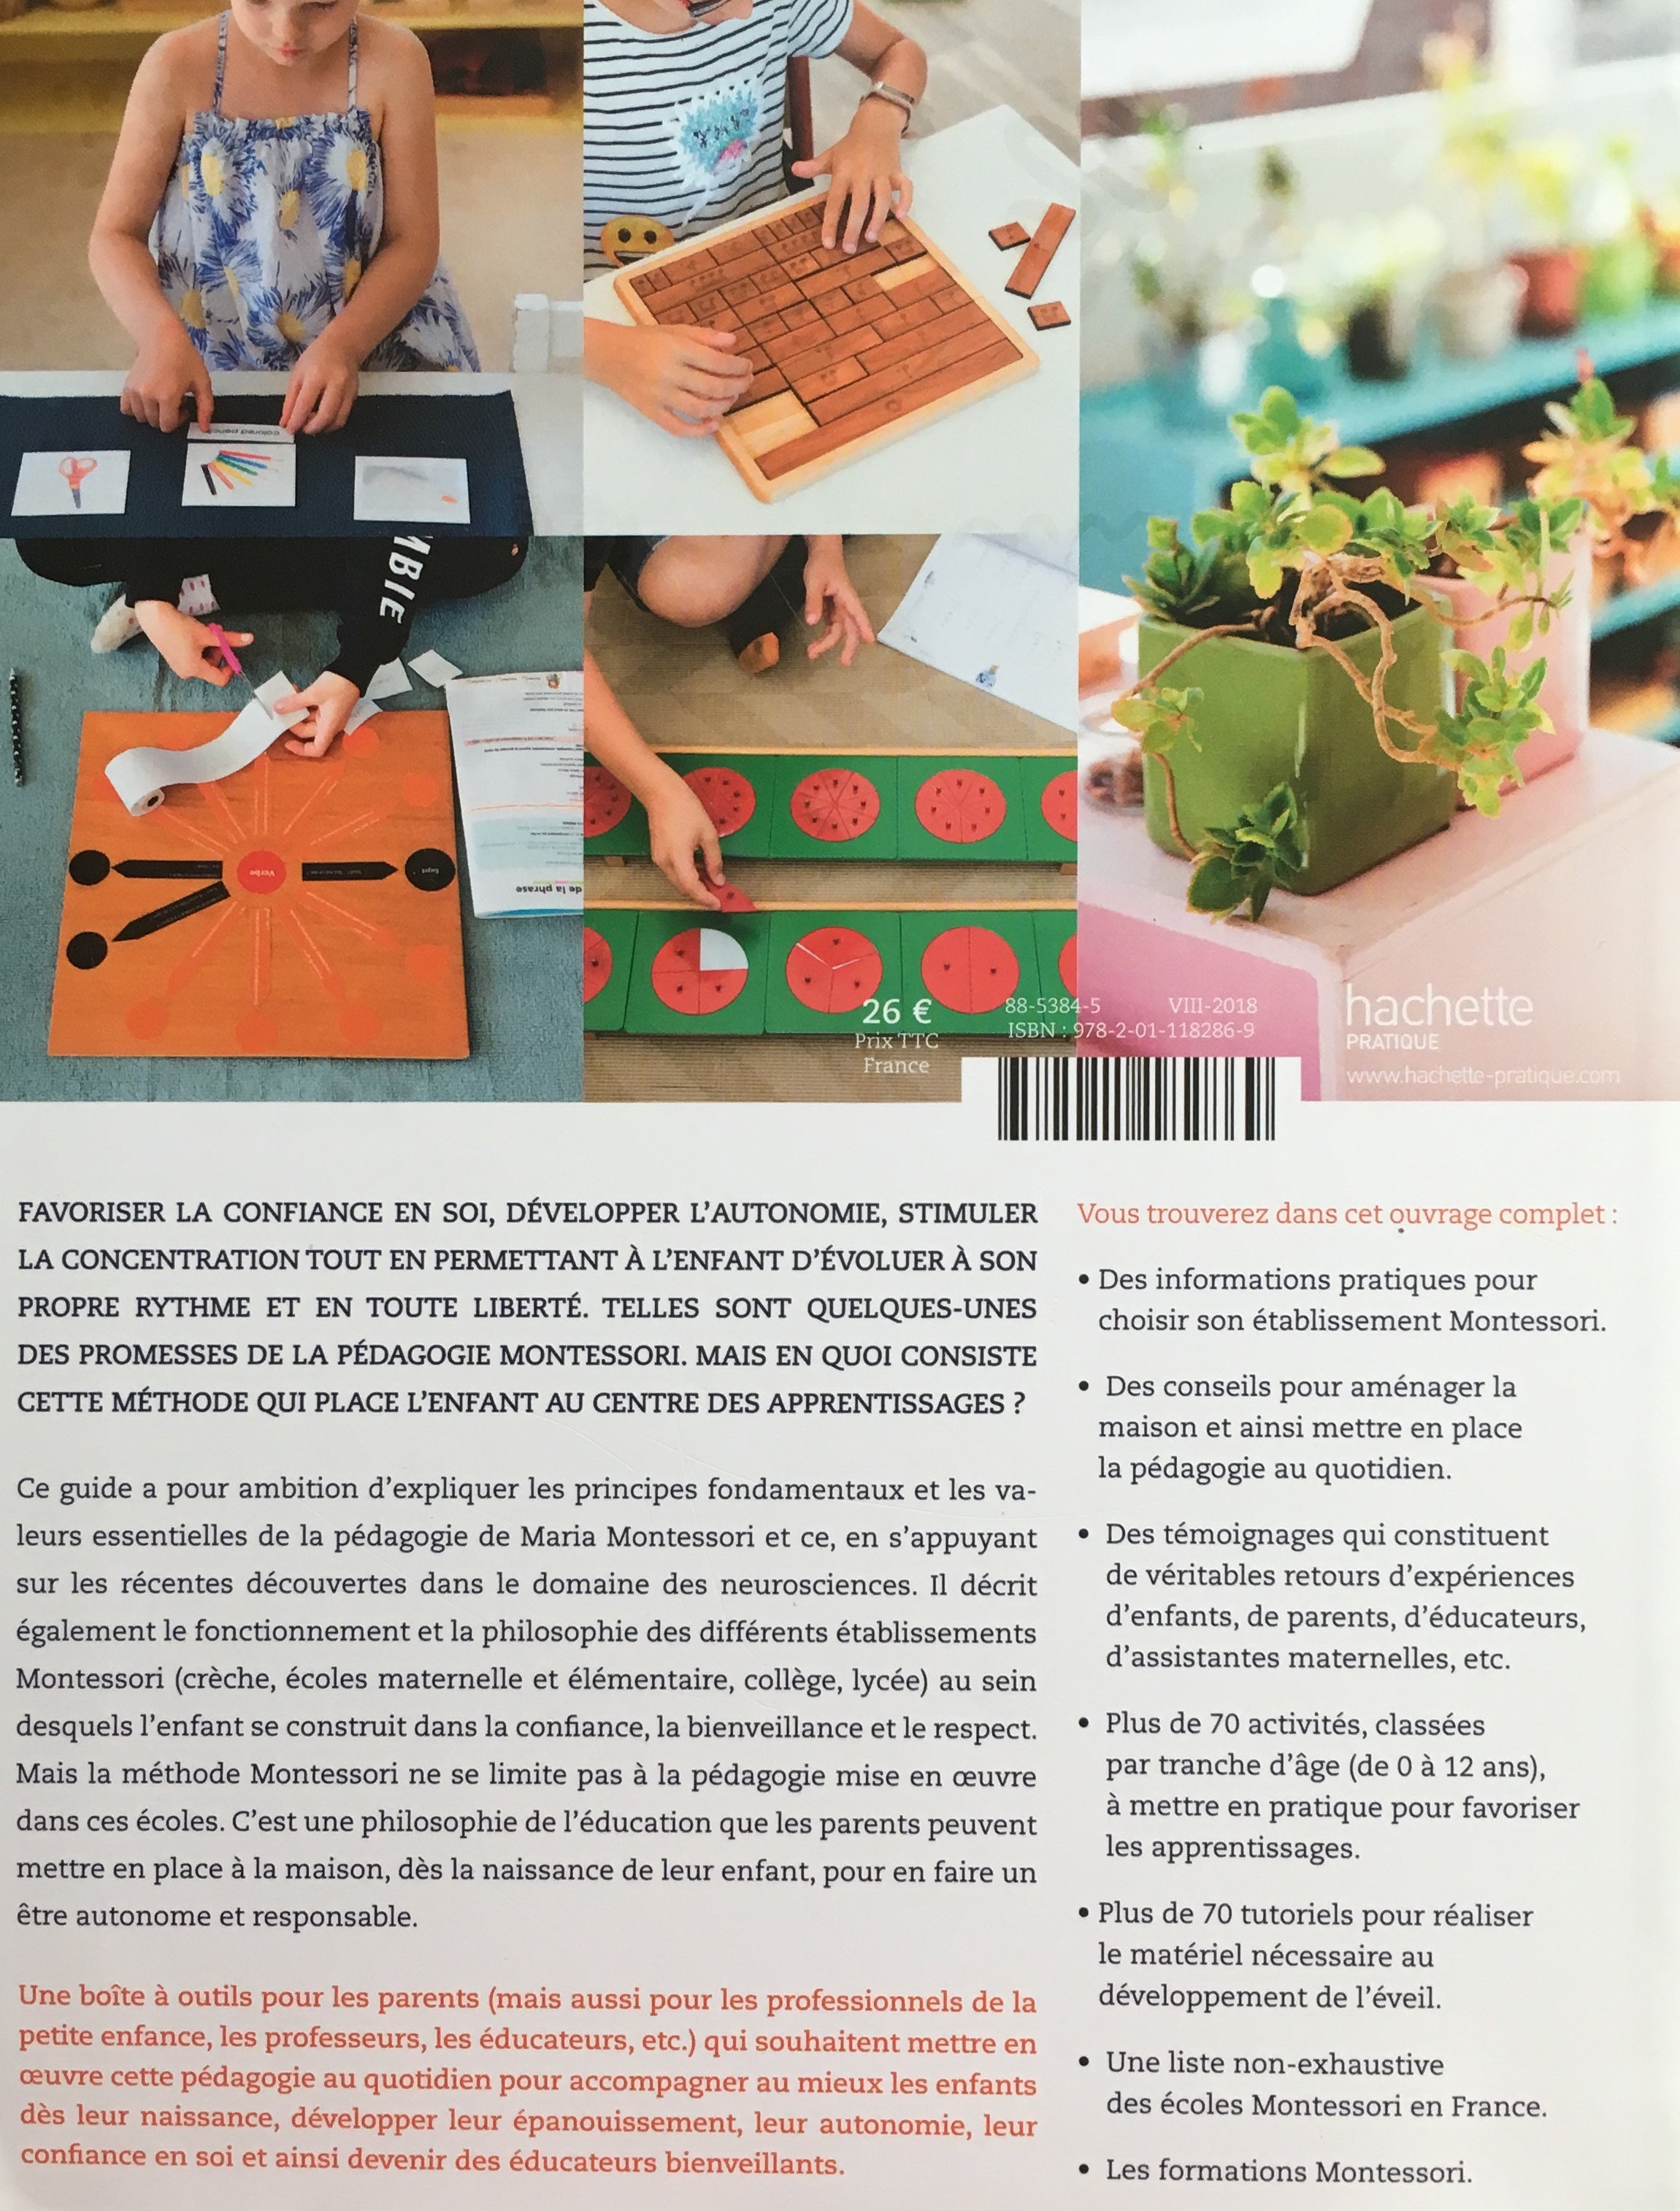 Le Guide Hachette de la Pédagogie Montessori